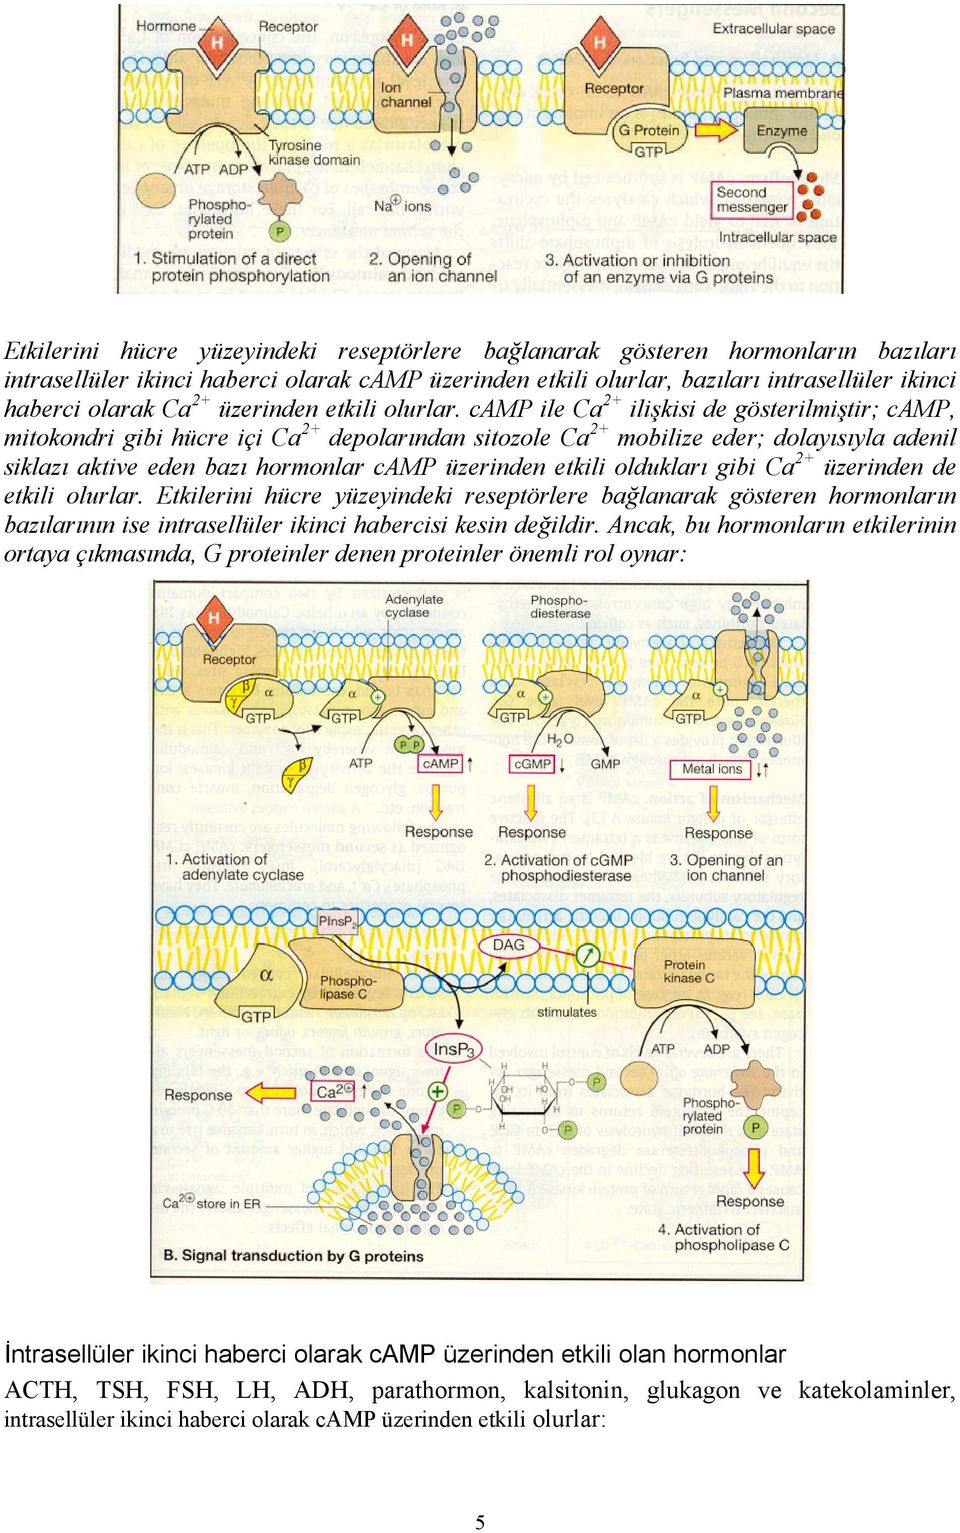 camp ile Ca2+ ilişkisi de gösterilmiştir; camp, mitokondri gibi hücre içi Ca2+ depolarından sitozole Ca2+ mobilize eder; dolayısıyla adenil siklazı aktive eden bazı hormonlar camp üzerinden etkili